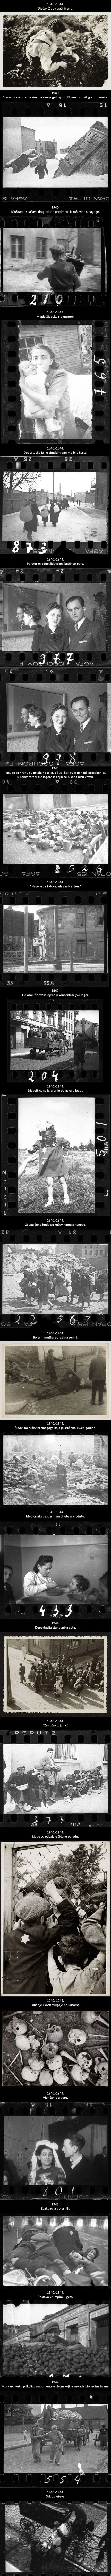 Židovski fotograf zakopao je fotografije kako ih nacisti ne bi našli, danas prikazuju najmračniji dio ljudske povijesti